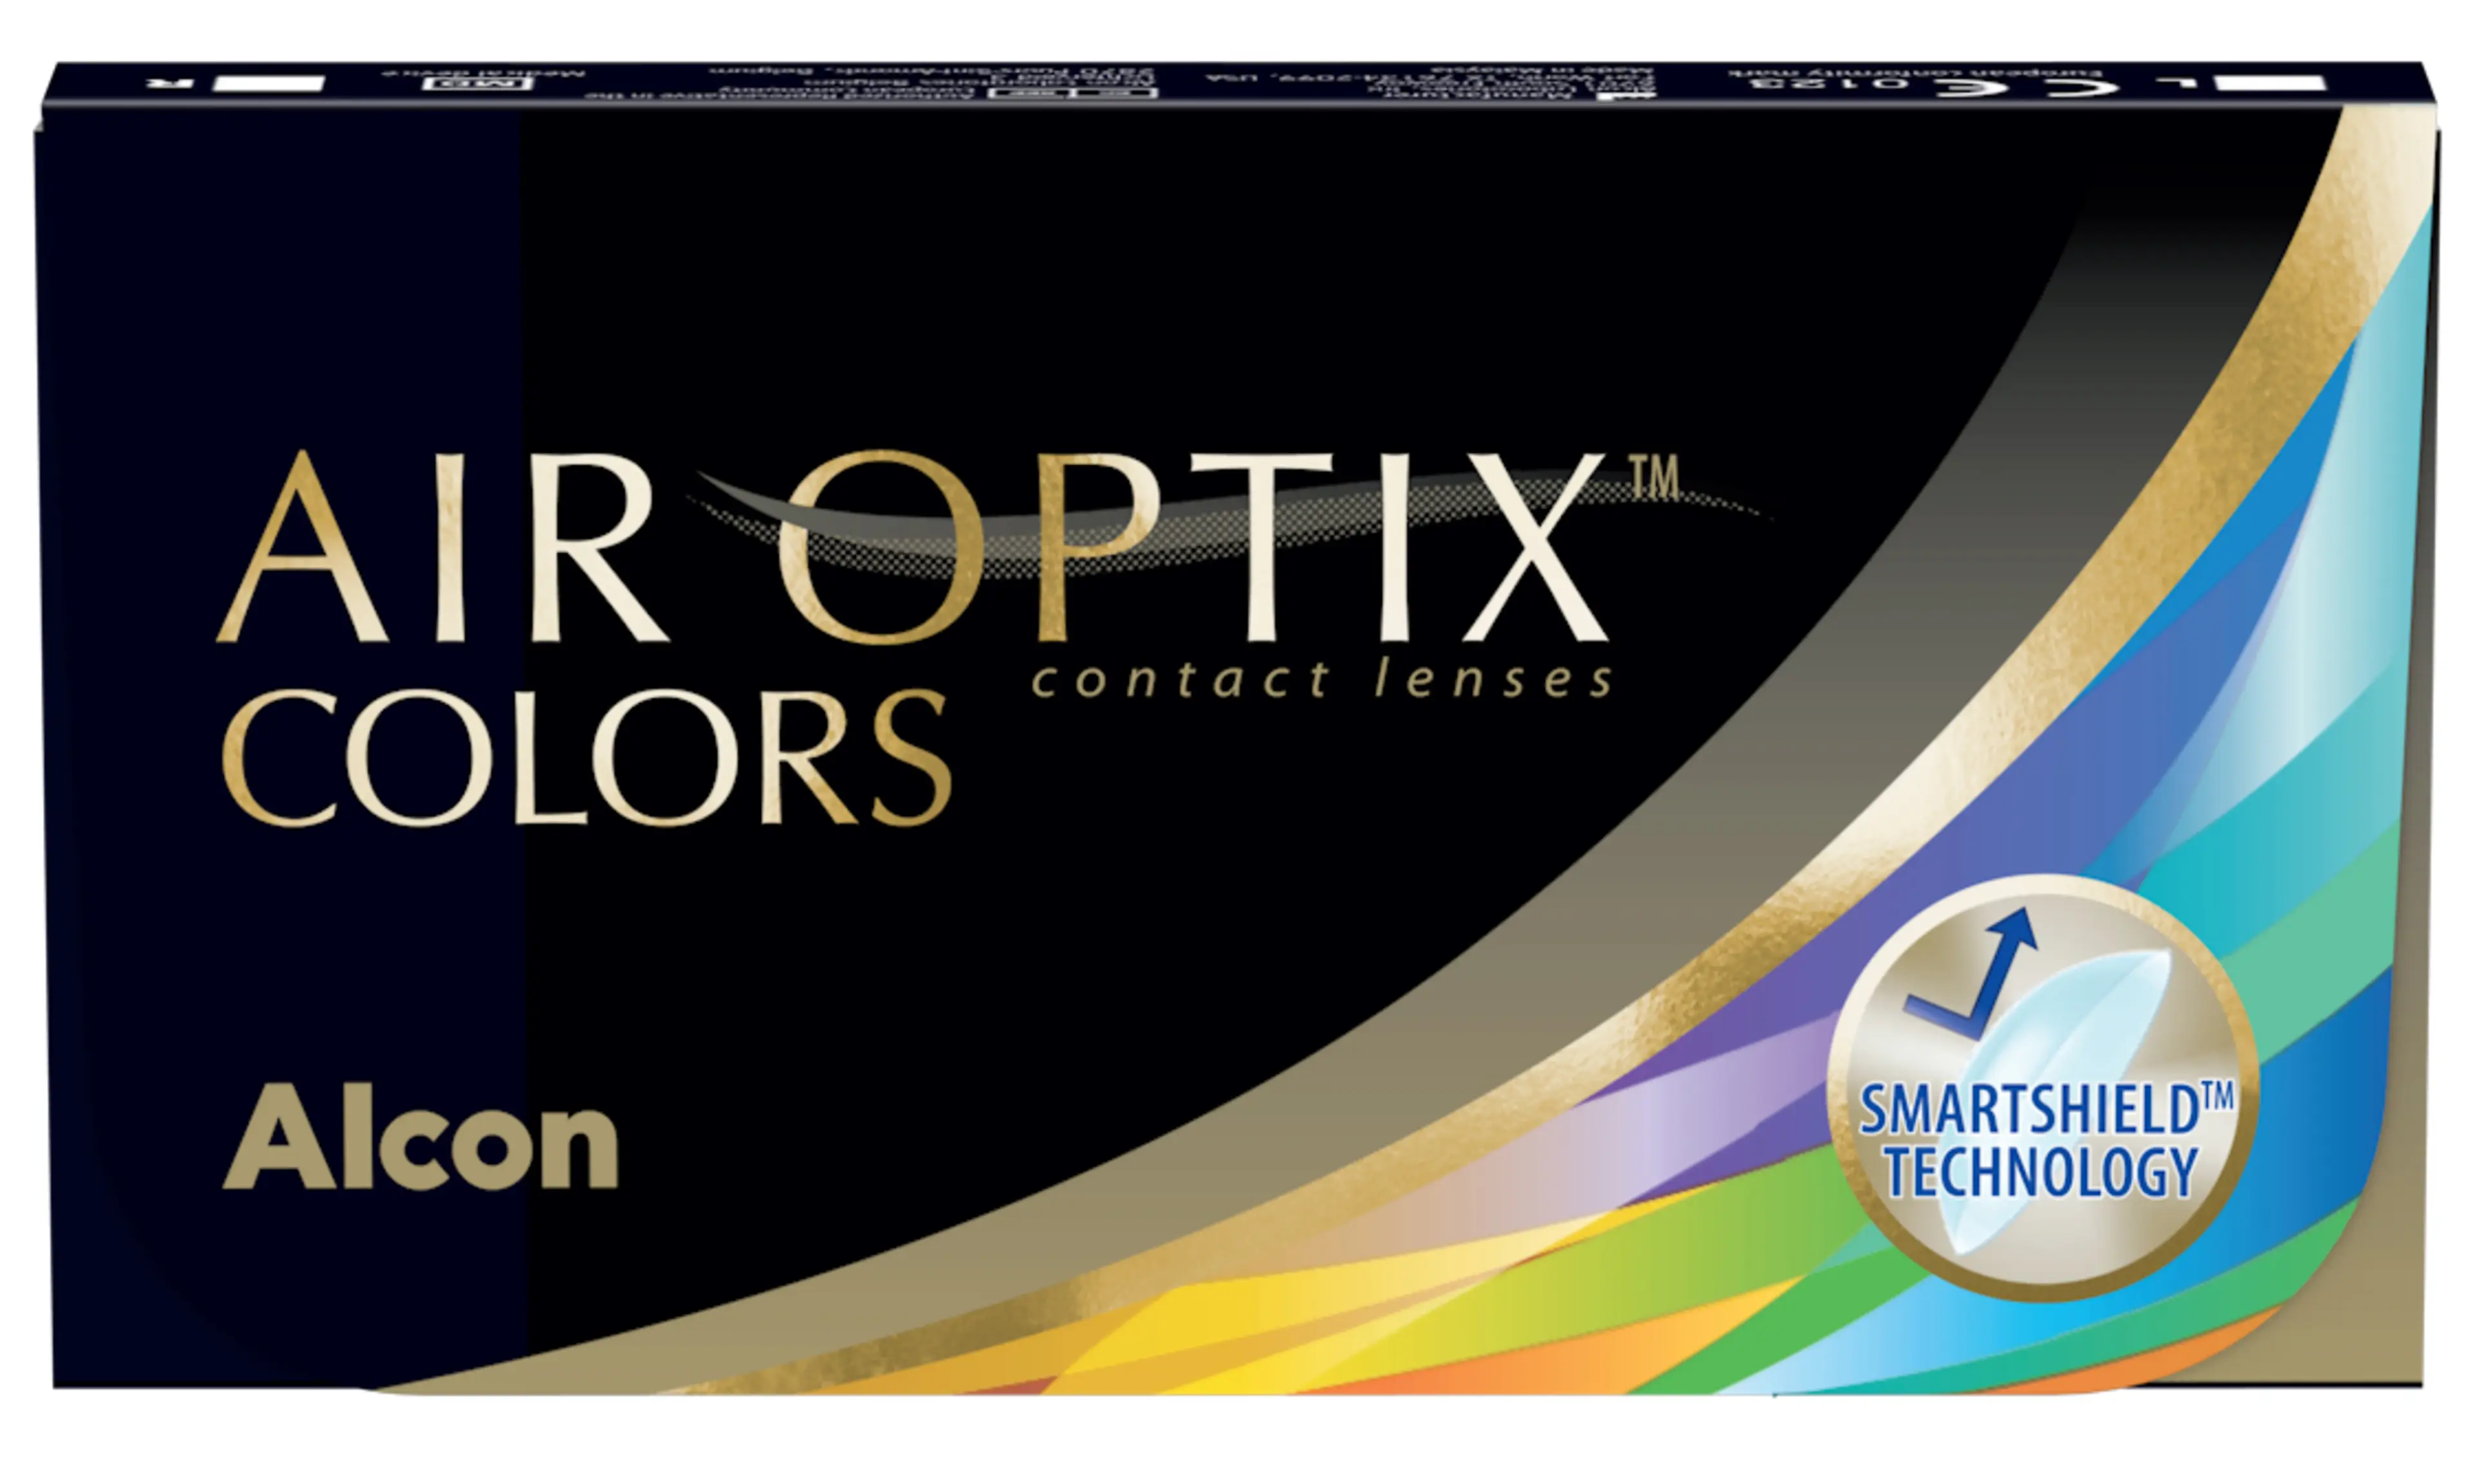 Air Optix Colors 